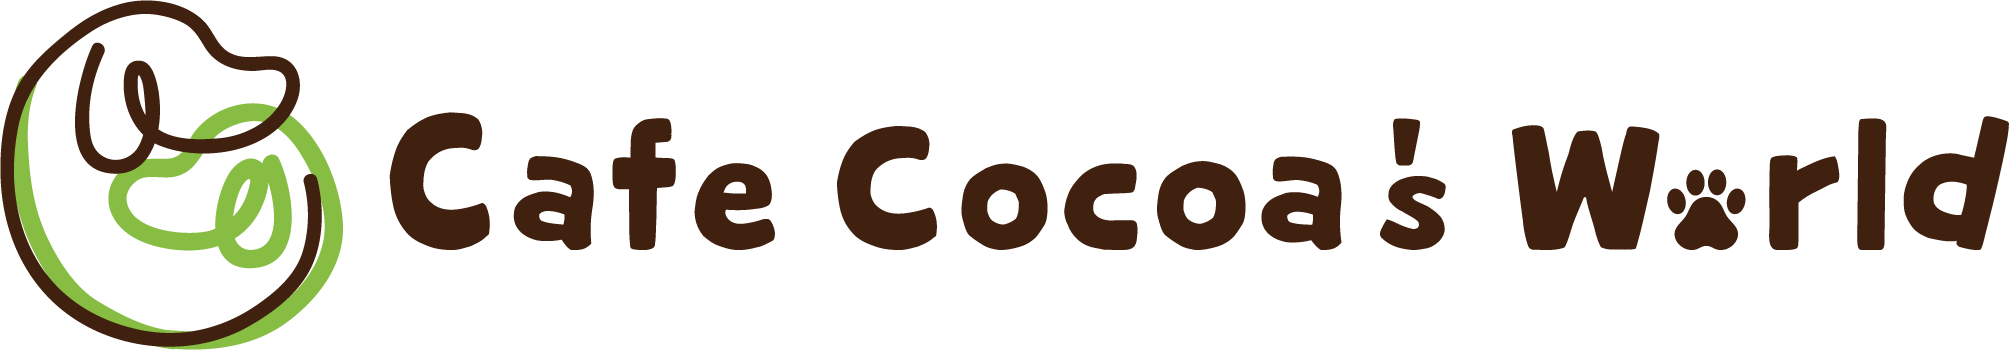 cafecocoa’s world カフェココアズワールド